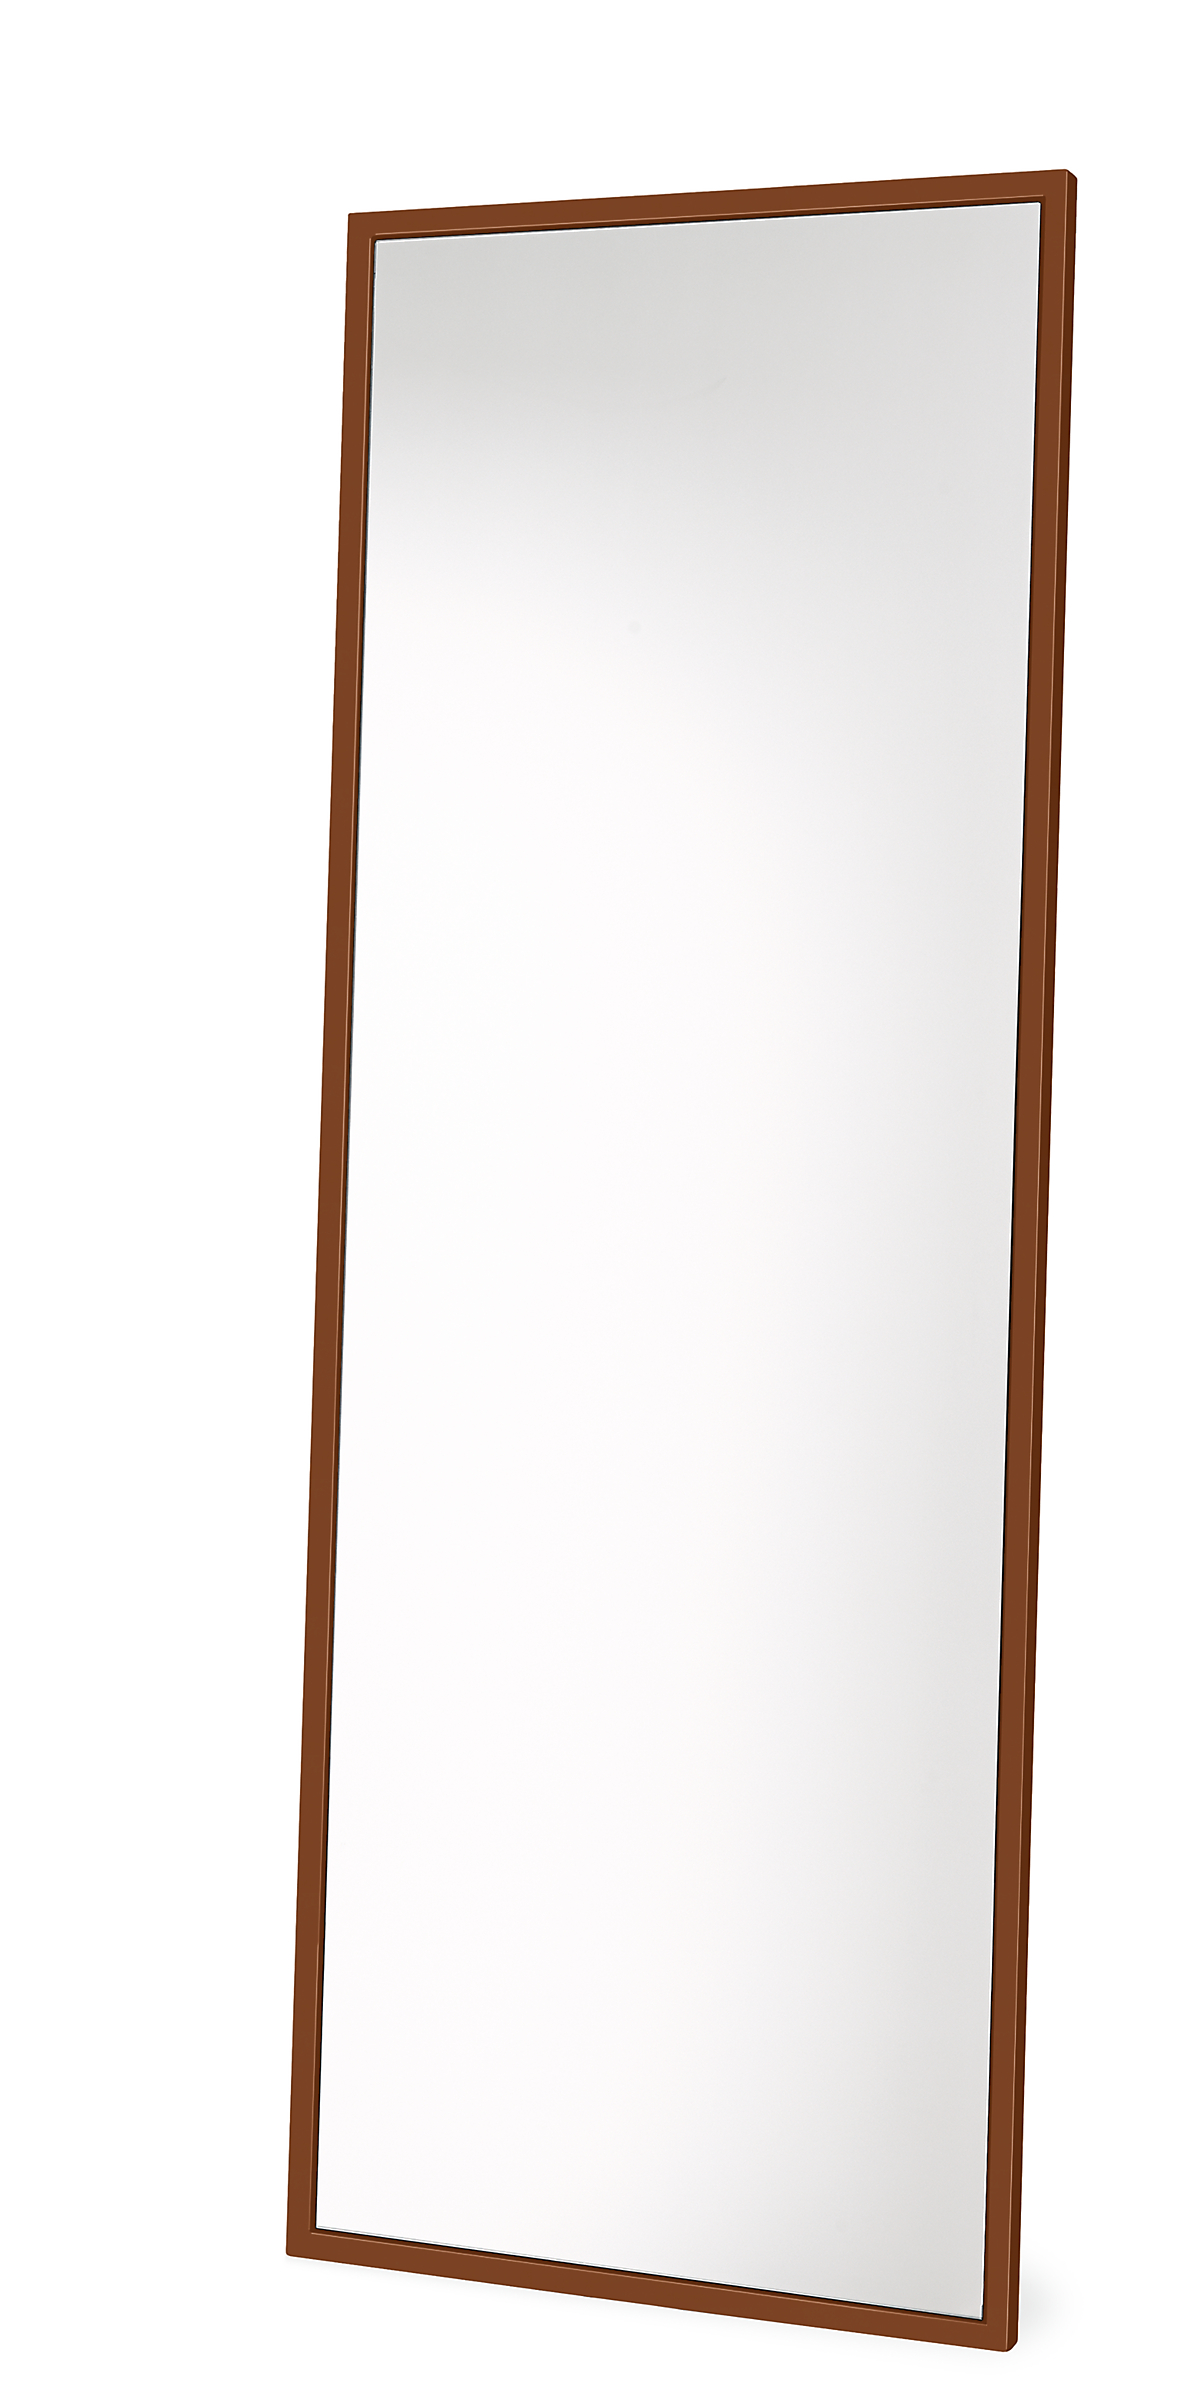 Soho 34w 1.5d 88h Floor Mirror for Bathroom